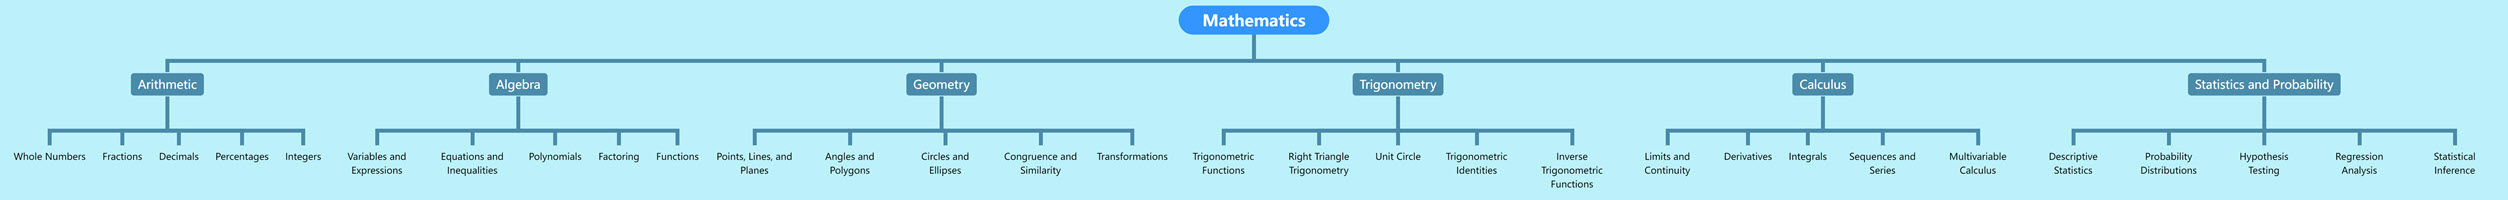 Tree Chart of Mathematics